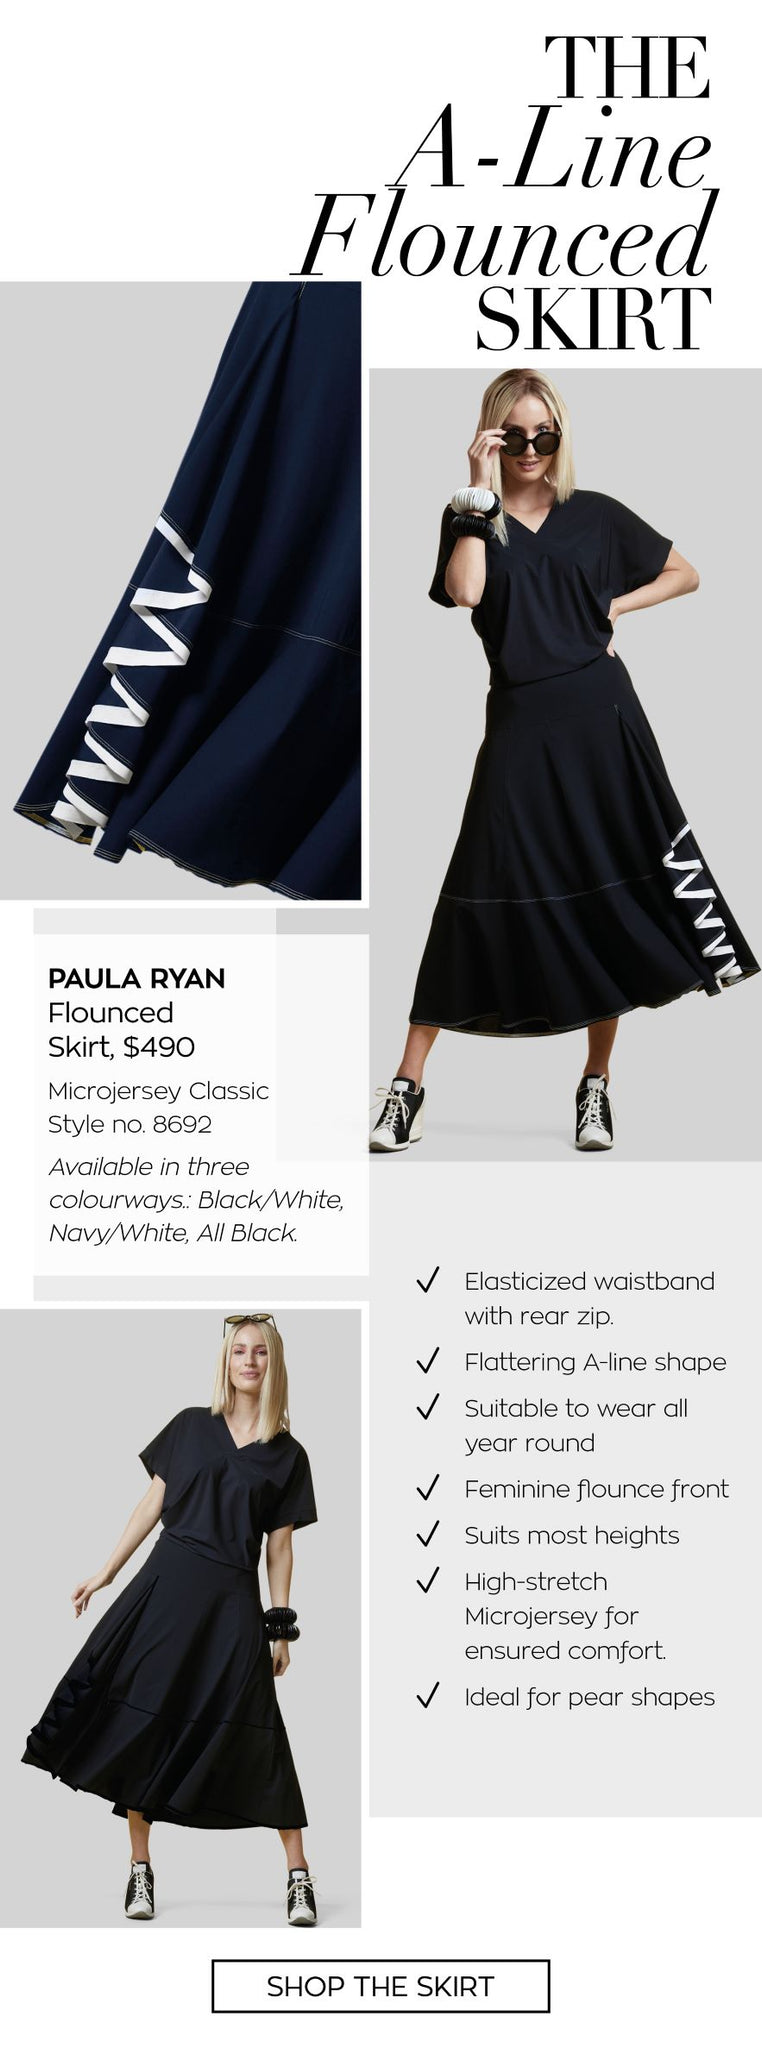 Paula Ryan Flounced Skirt